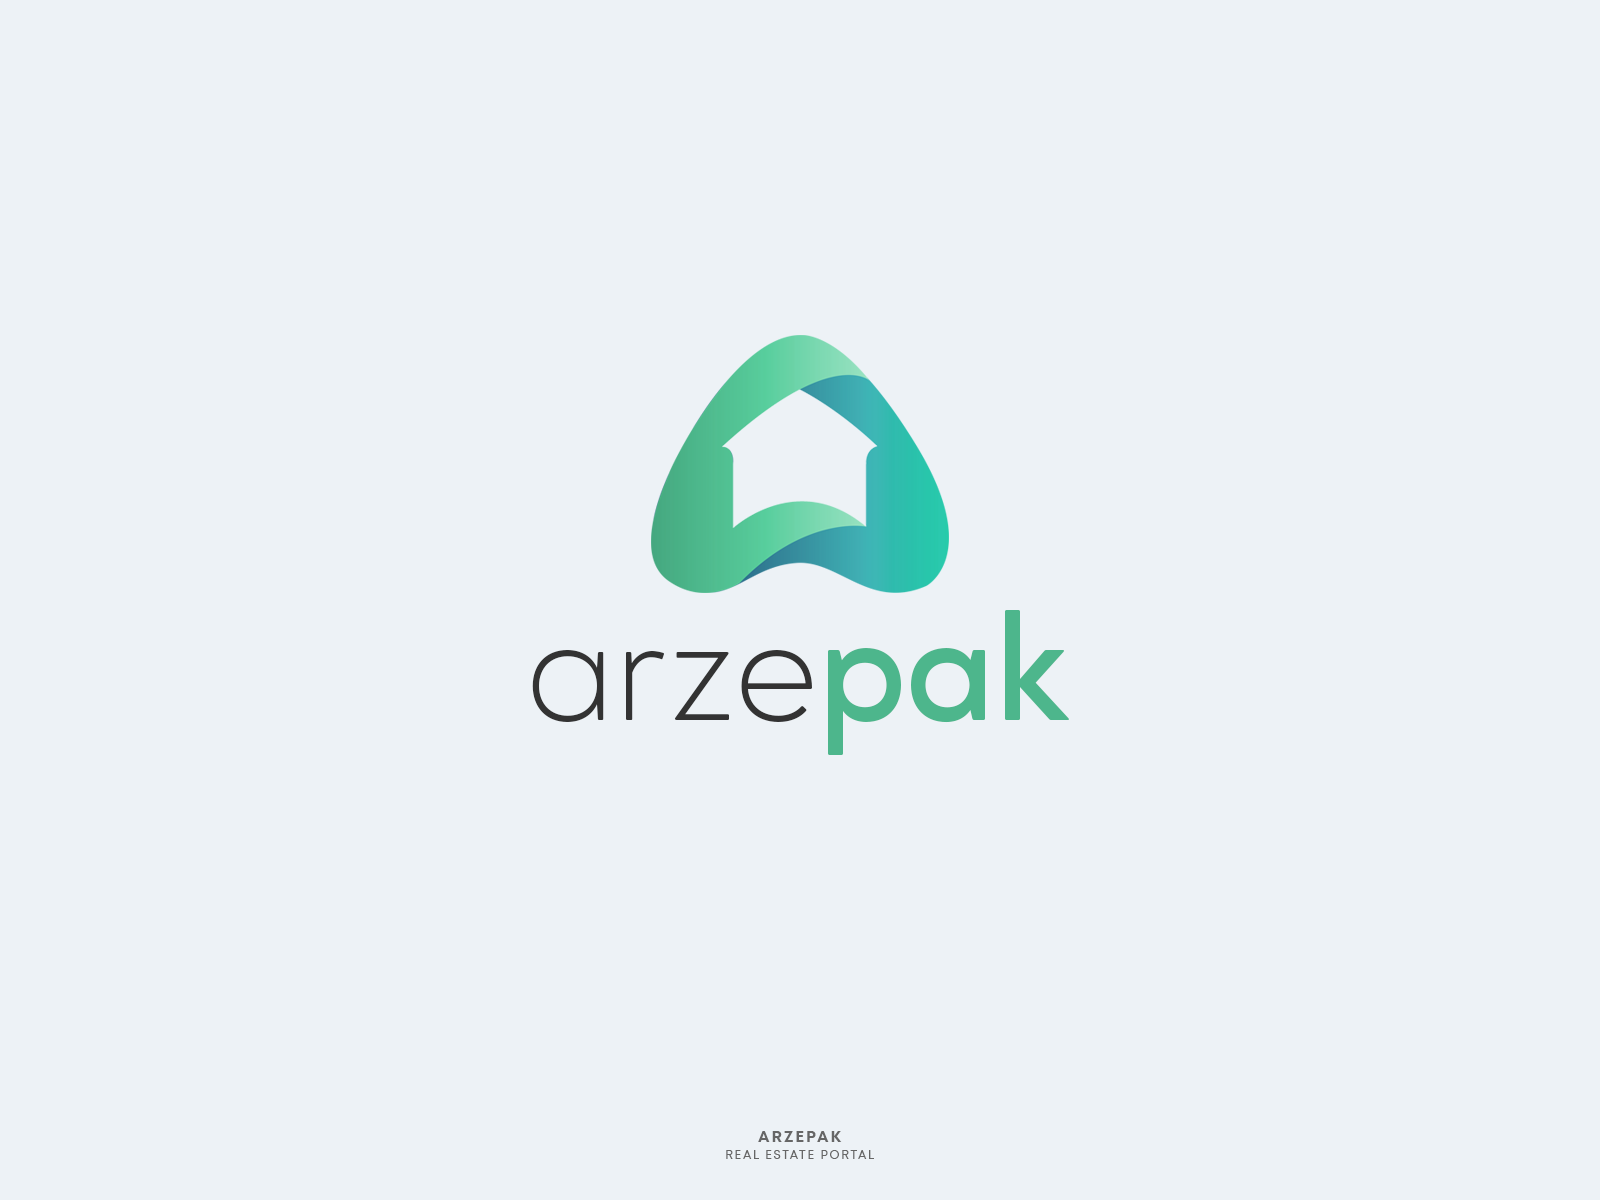 Arzepak Logo by Wahab Ali on Dribbble